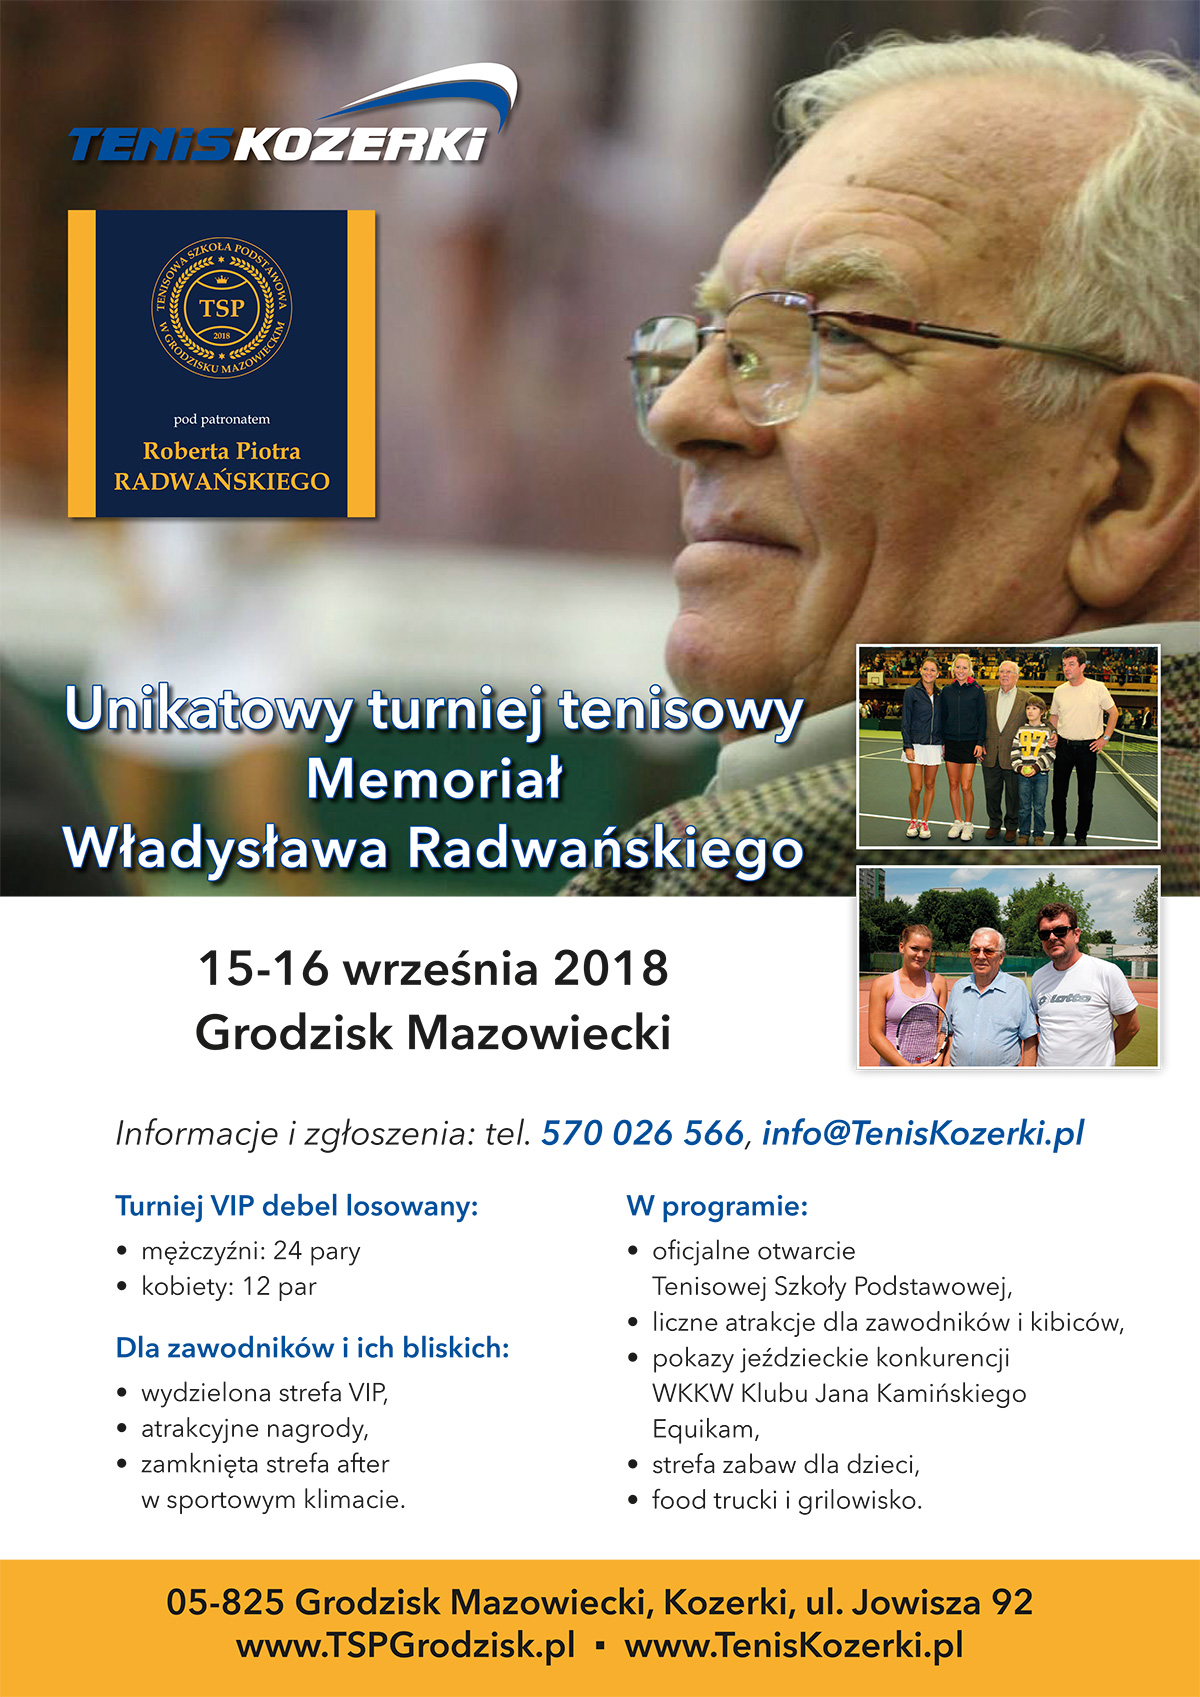 Memoriał Władysława Radwańskiego